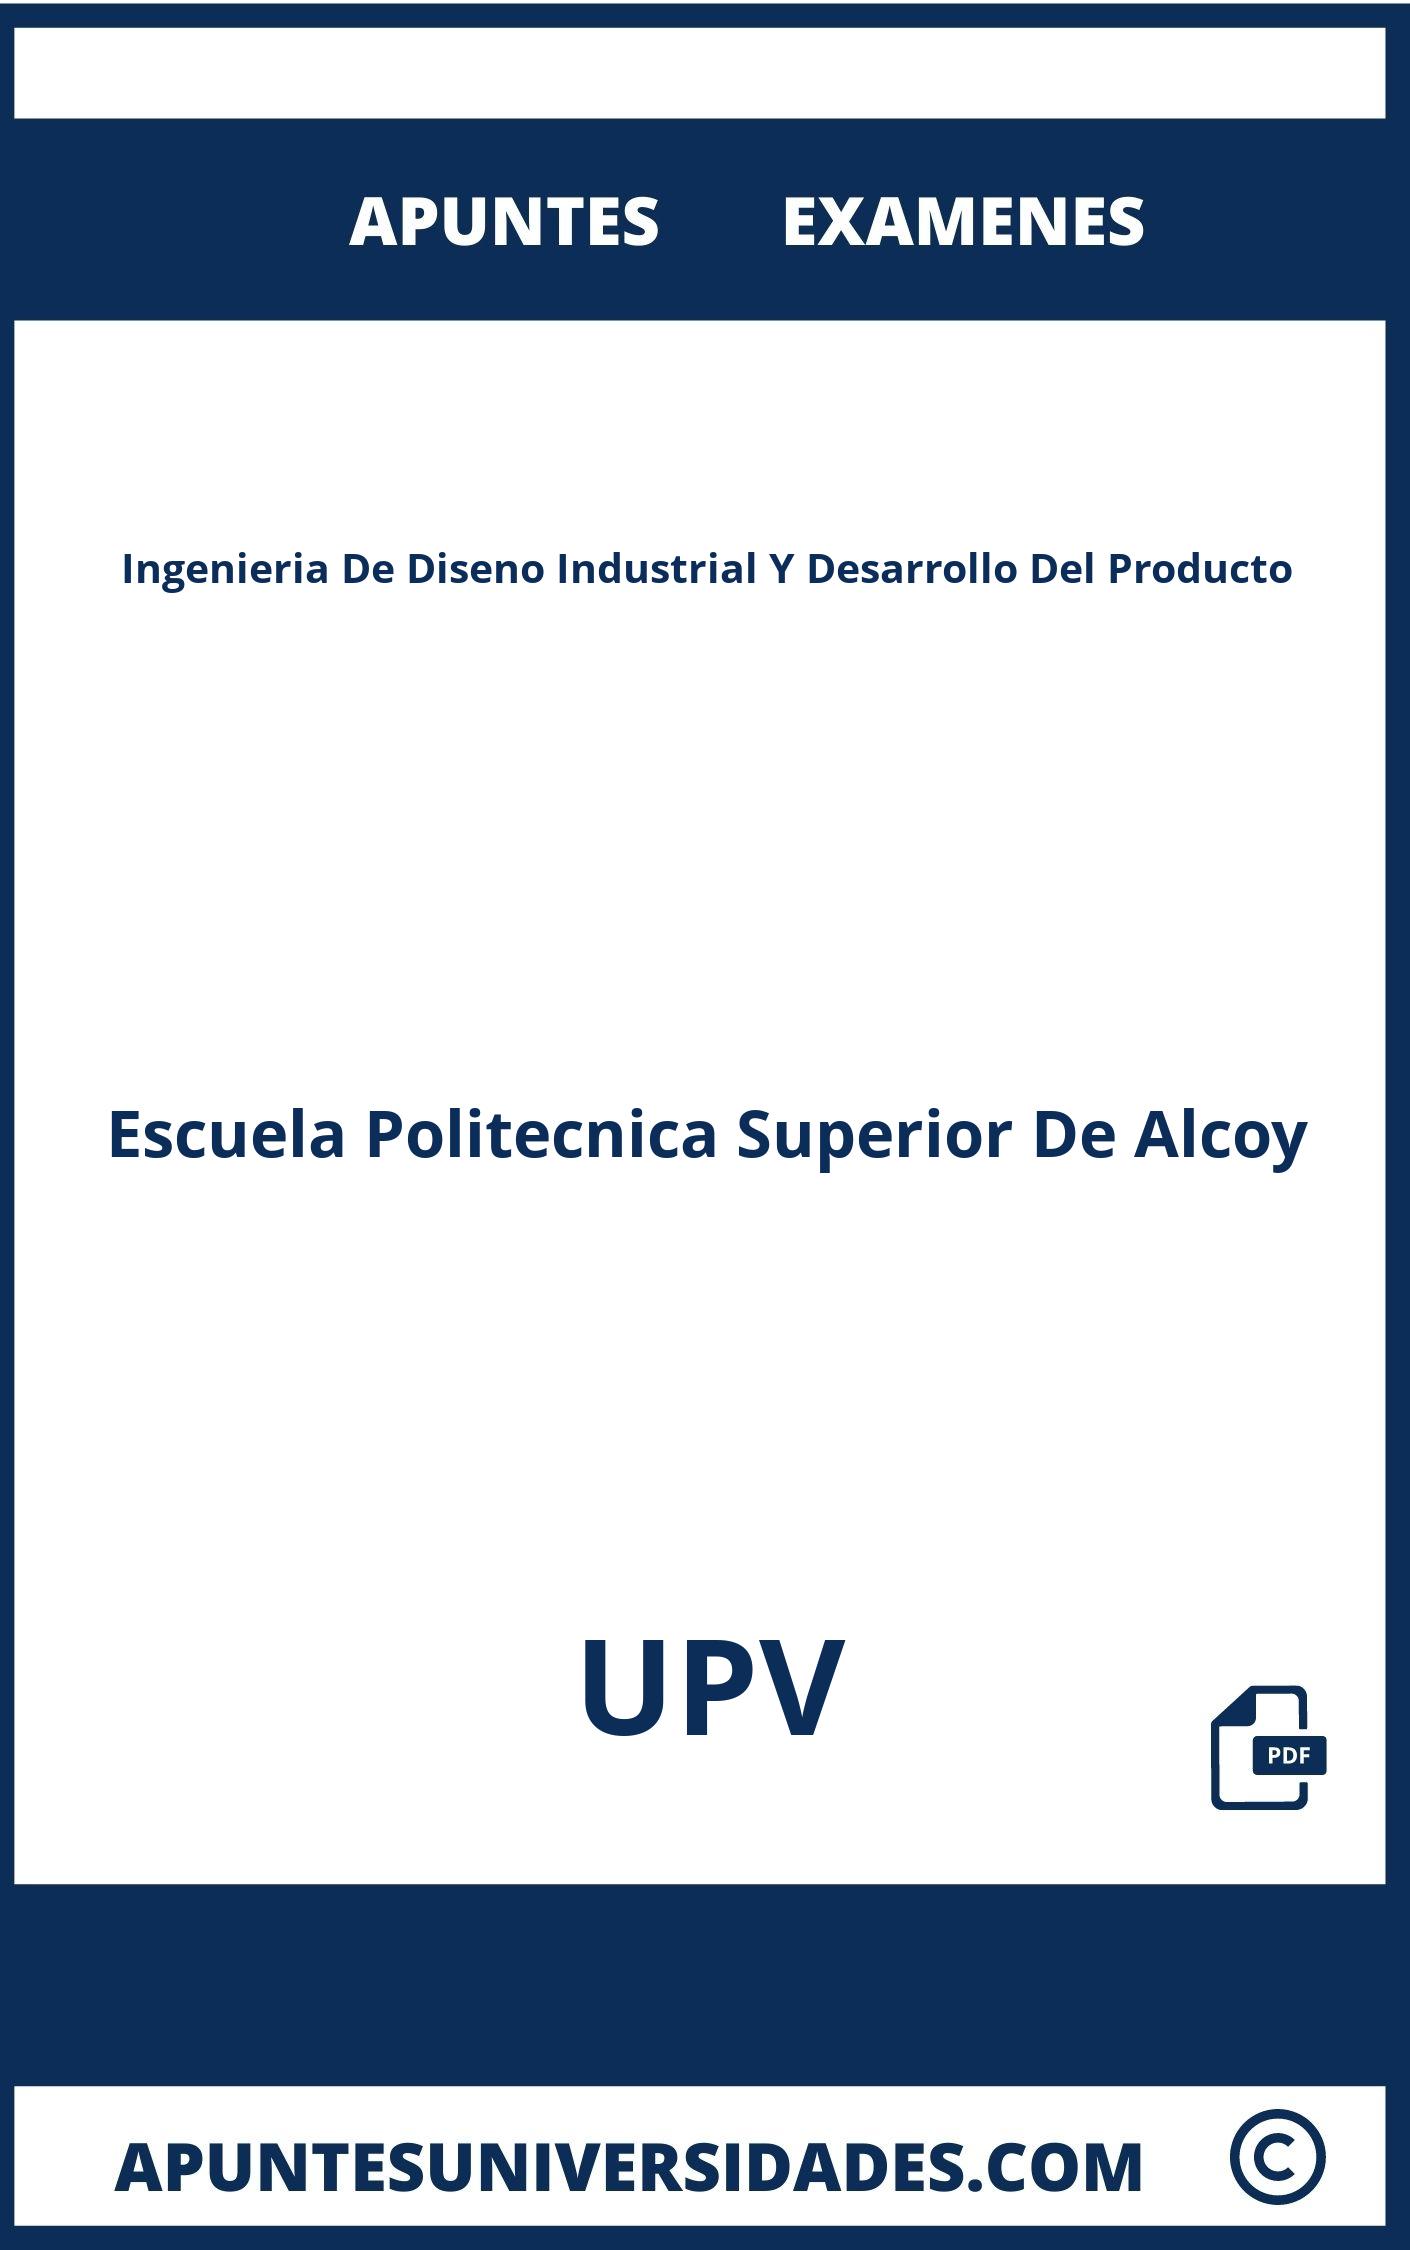 Examenes Apuntes Ingenieria De Diseno Industrial Y Desarrollo Del Producto UPV